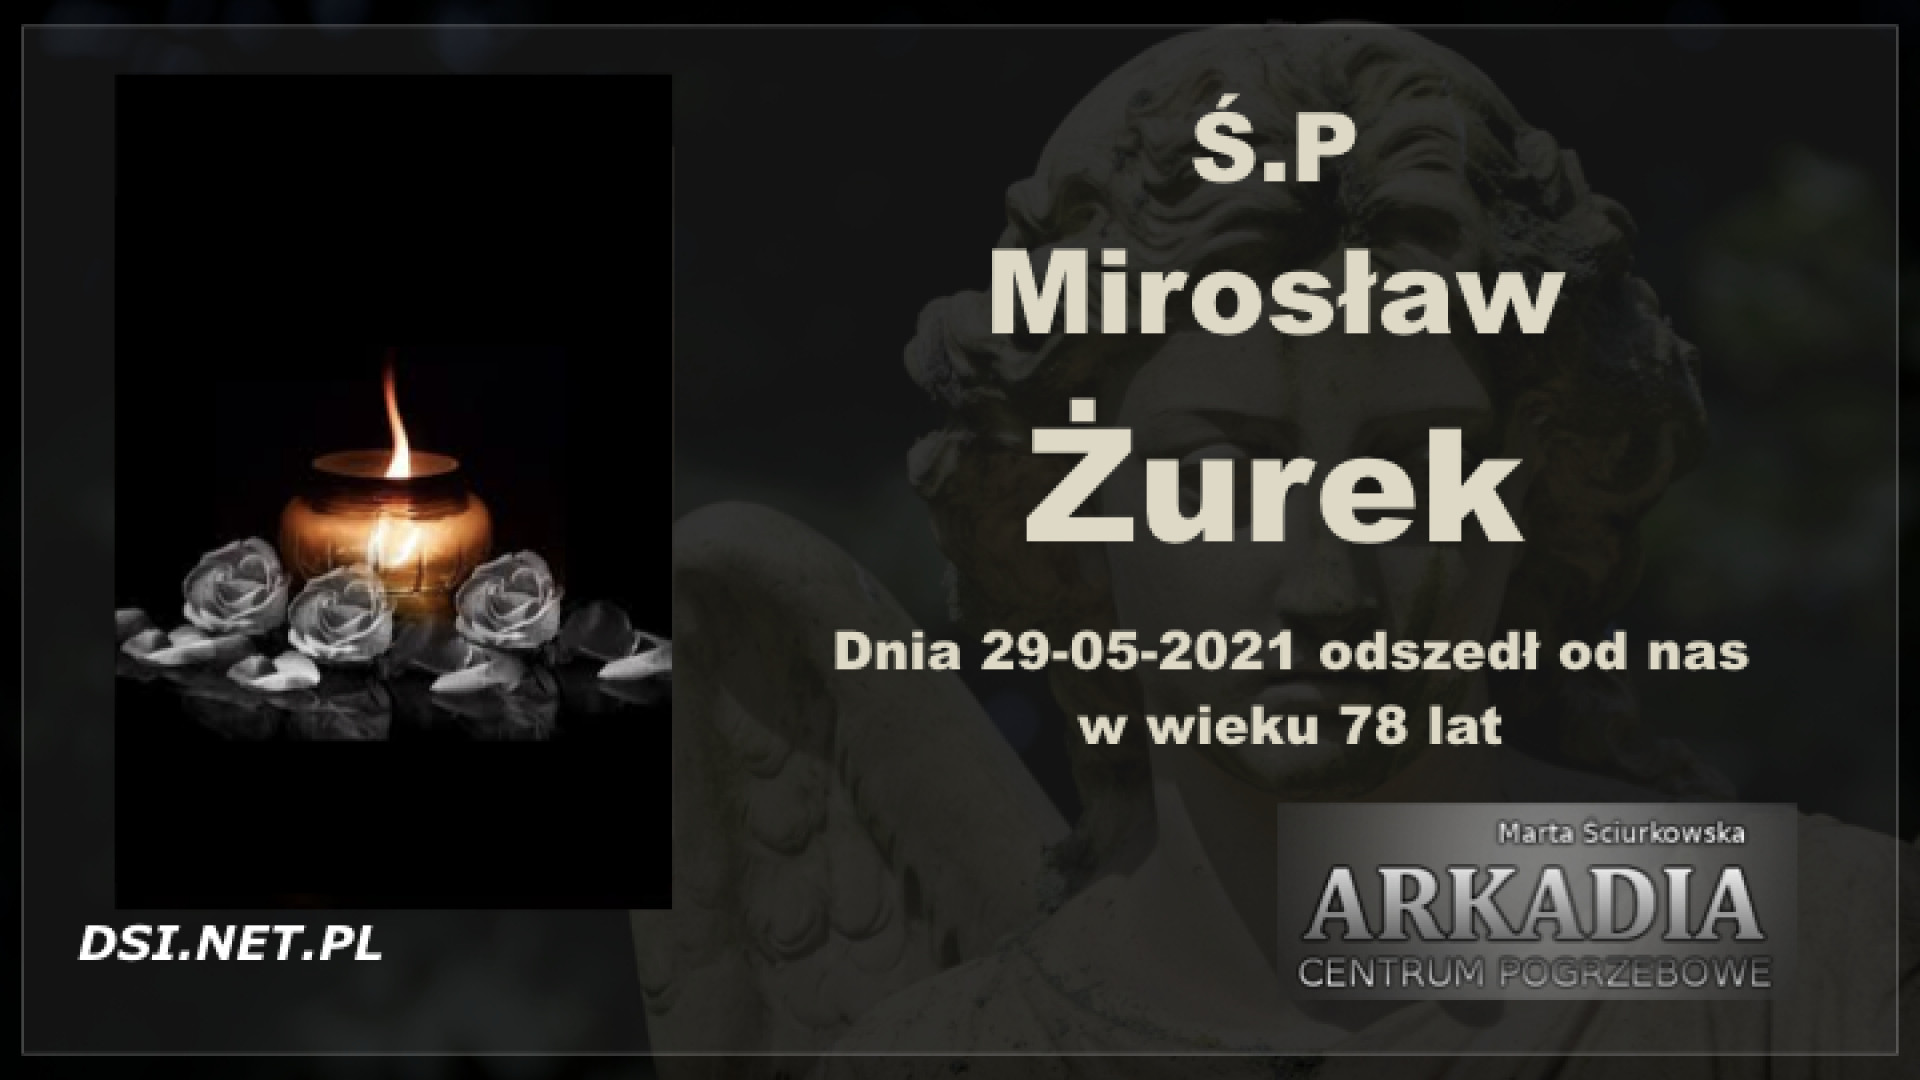 Ś.P. Mirosław Żurek